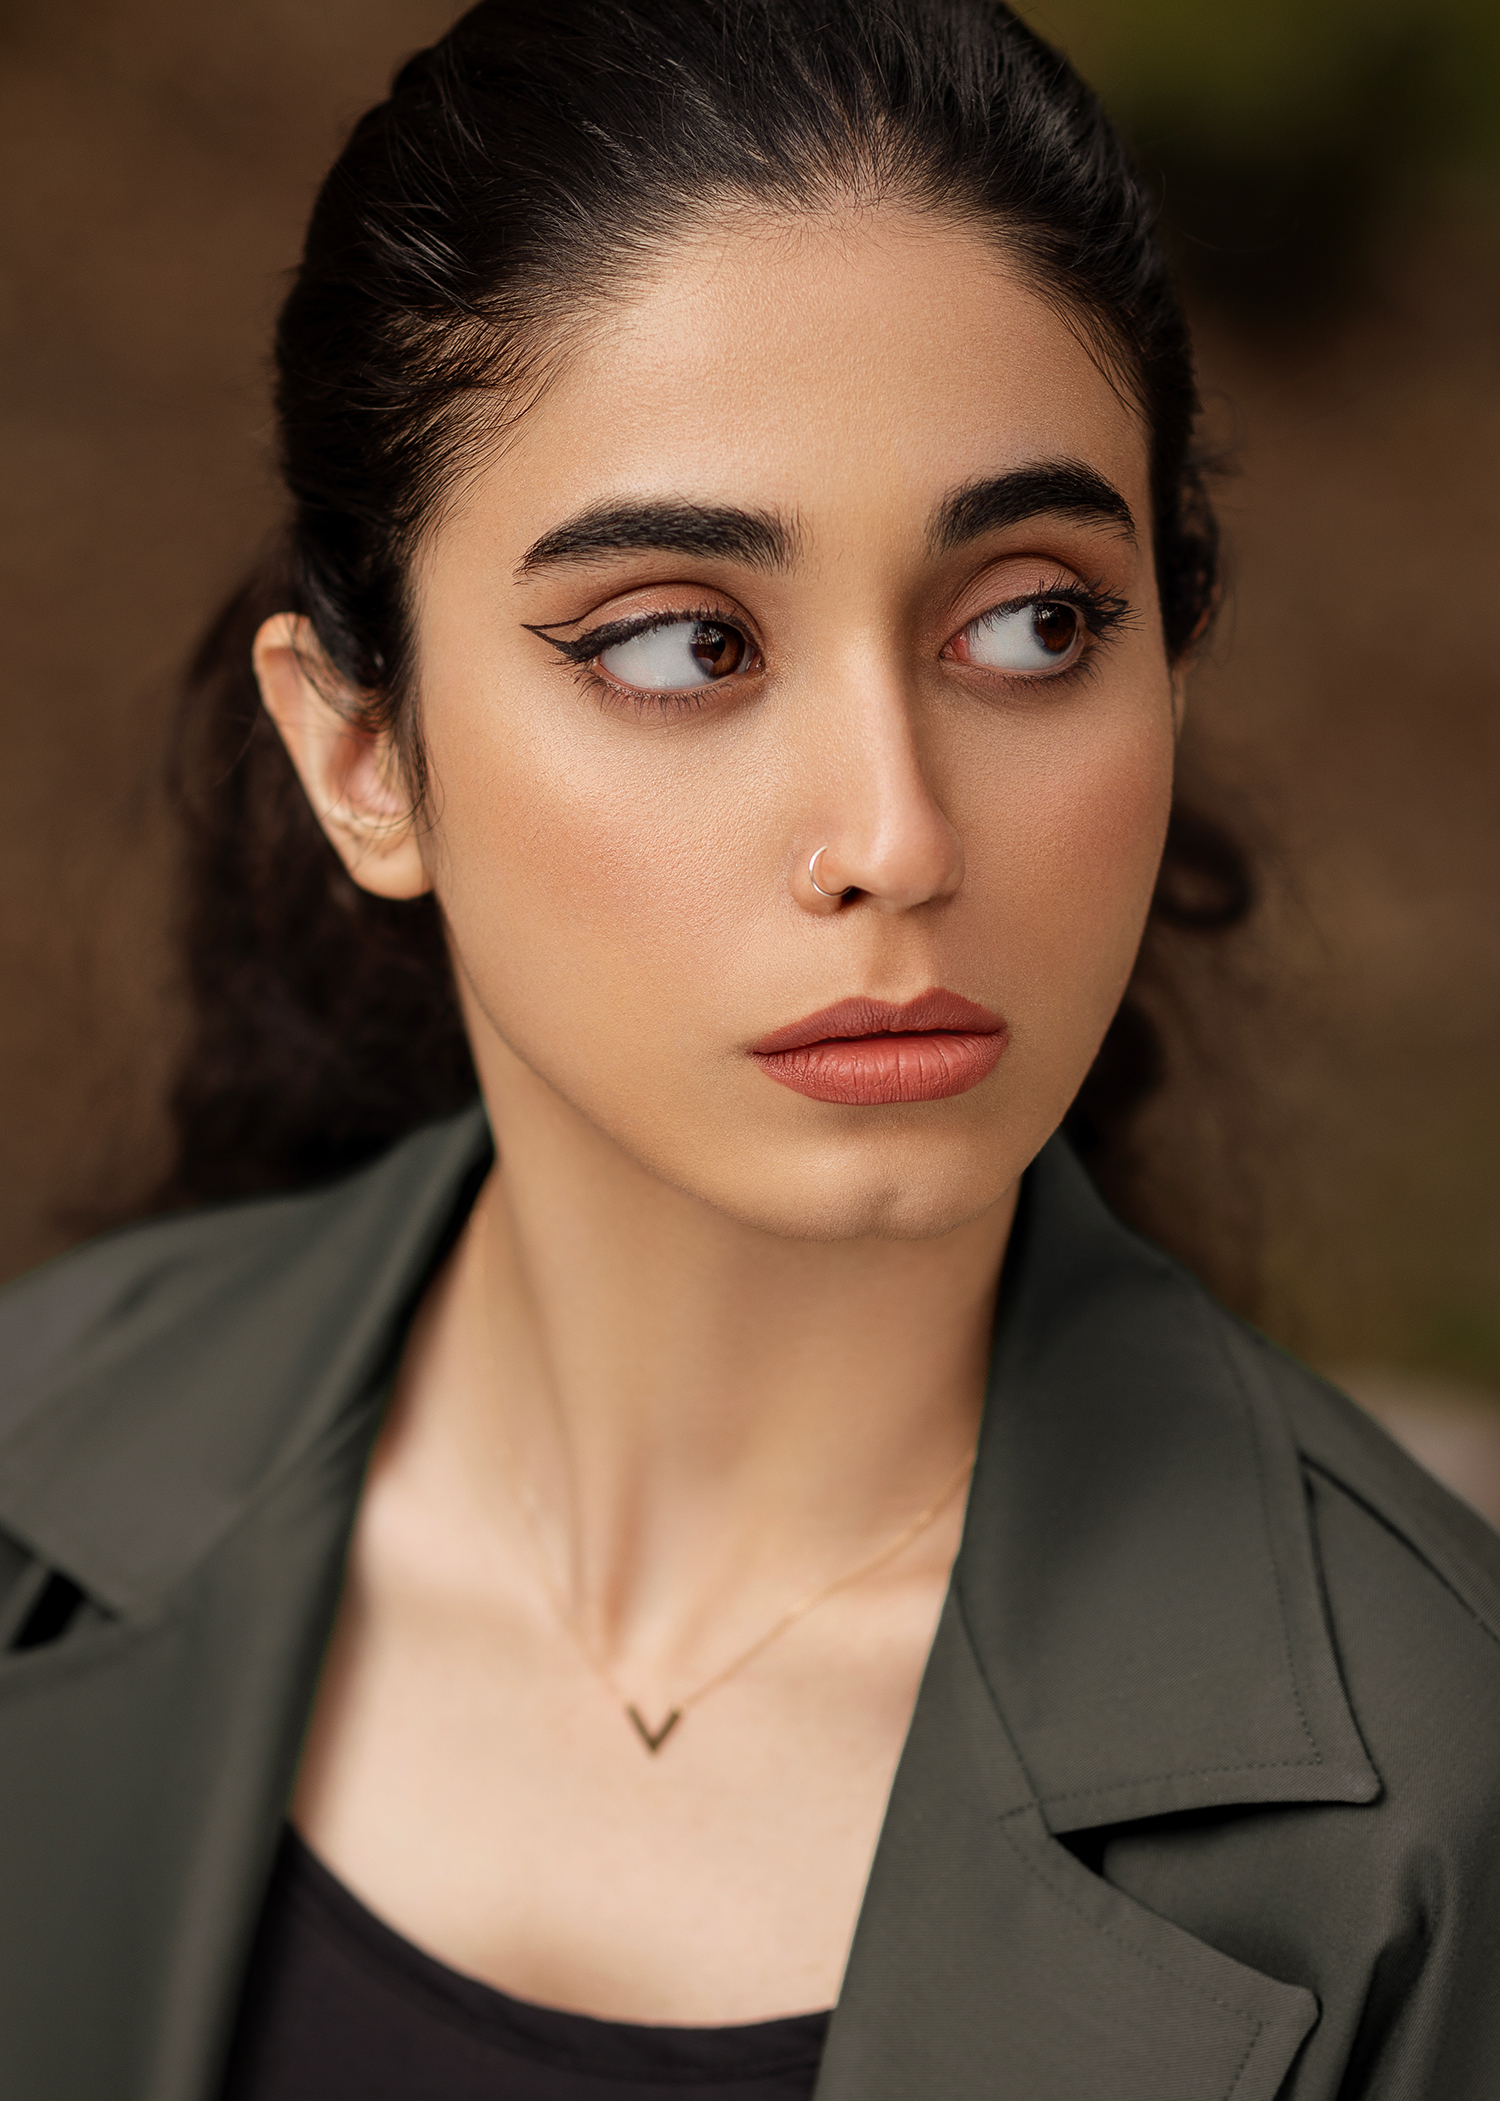 Ali Shomali Women Portrait Piercing Eyeliner Looking Away 1500x2101